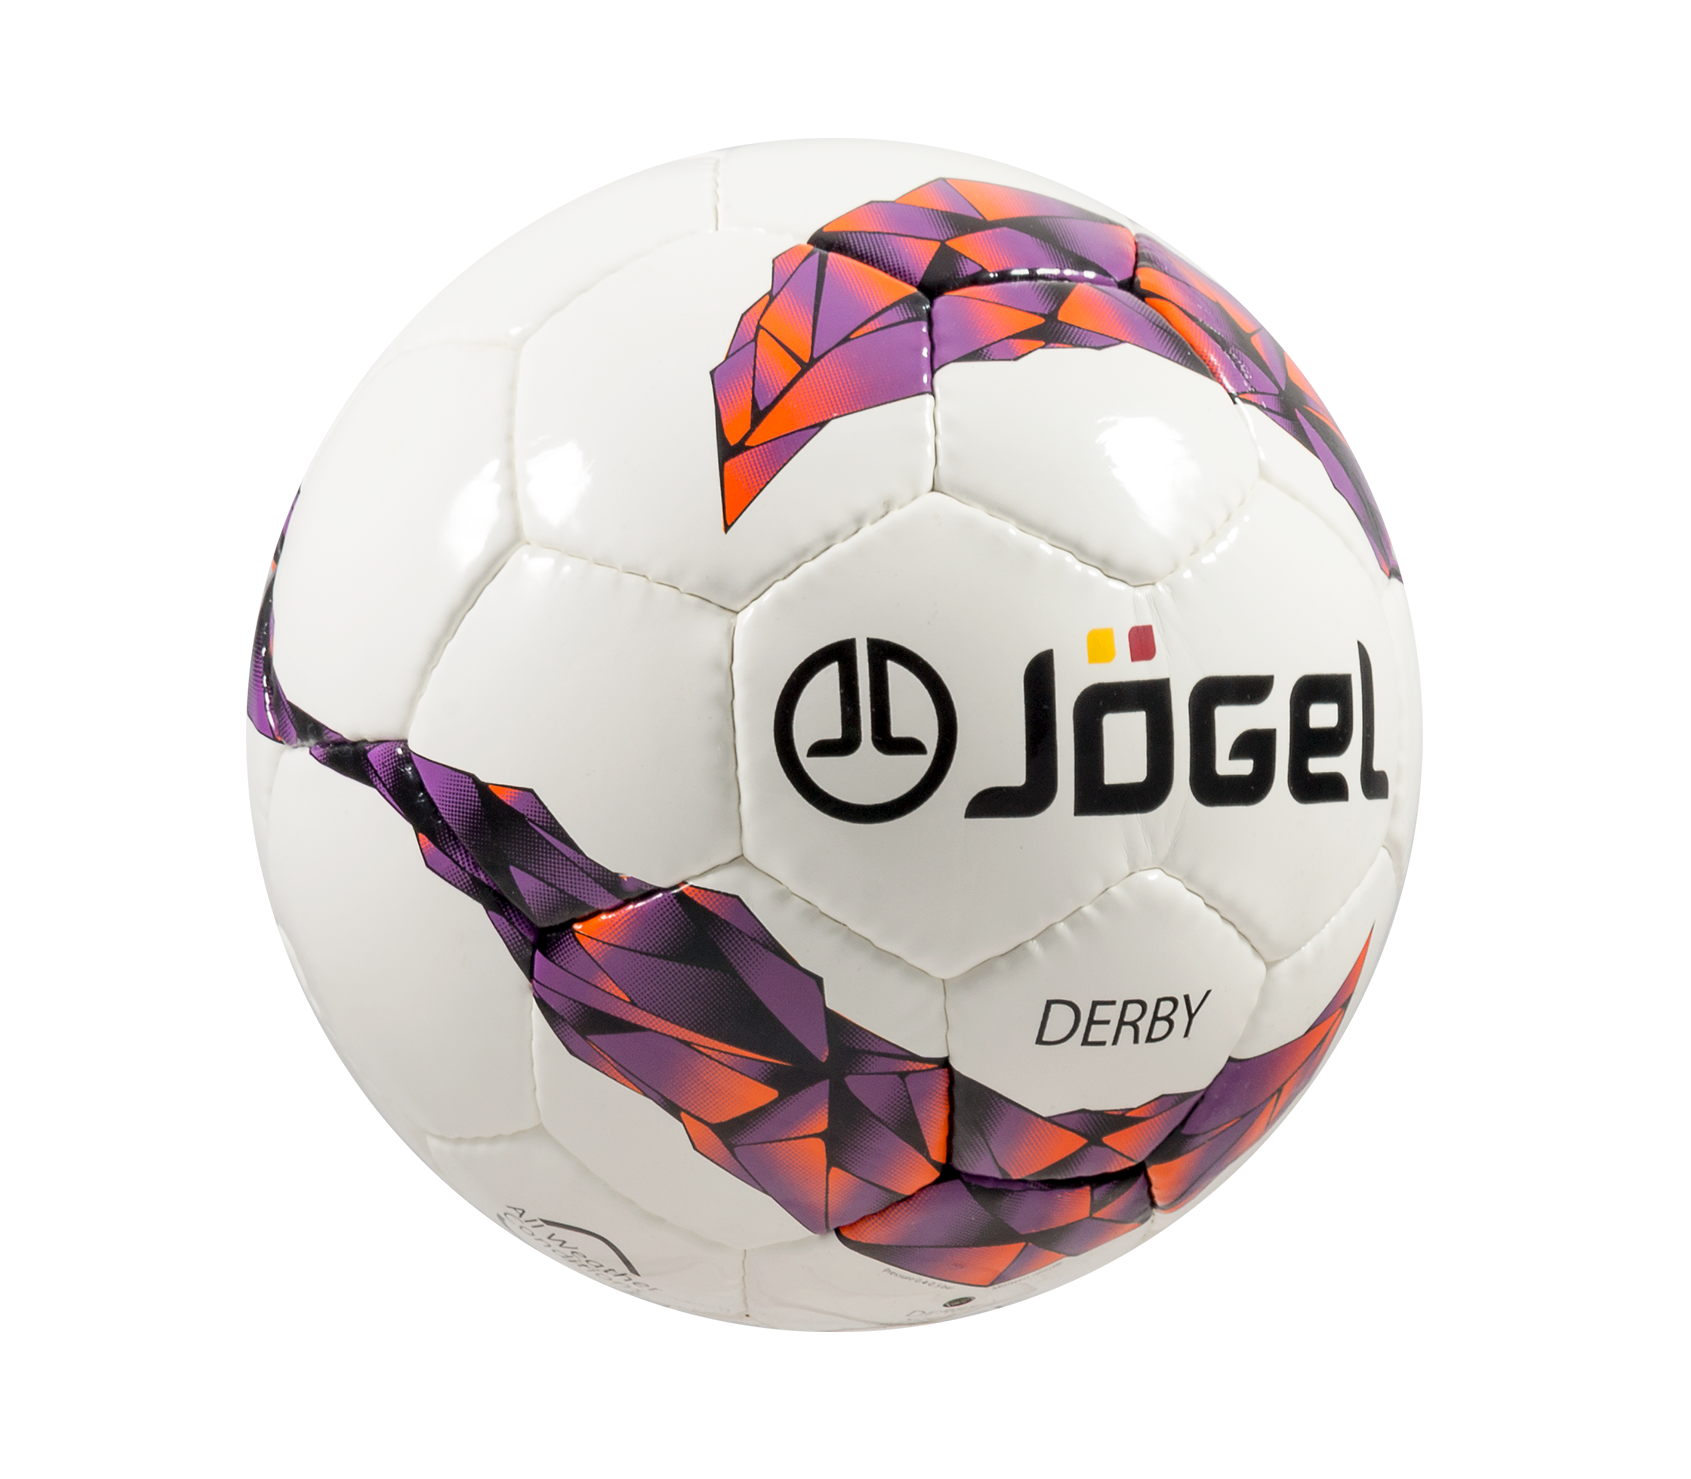 Мяч футбольный Jogel js-560 Derby №3. Мяч футбольный js-560 Derby №4. Мяч футбольный Jögel js-460 Force №4 1/40. Футбольный мяч Jögel no 3. J gel